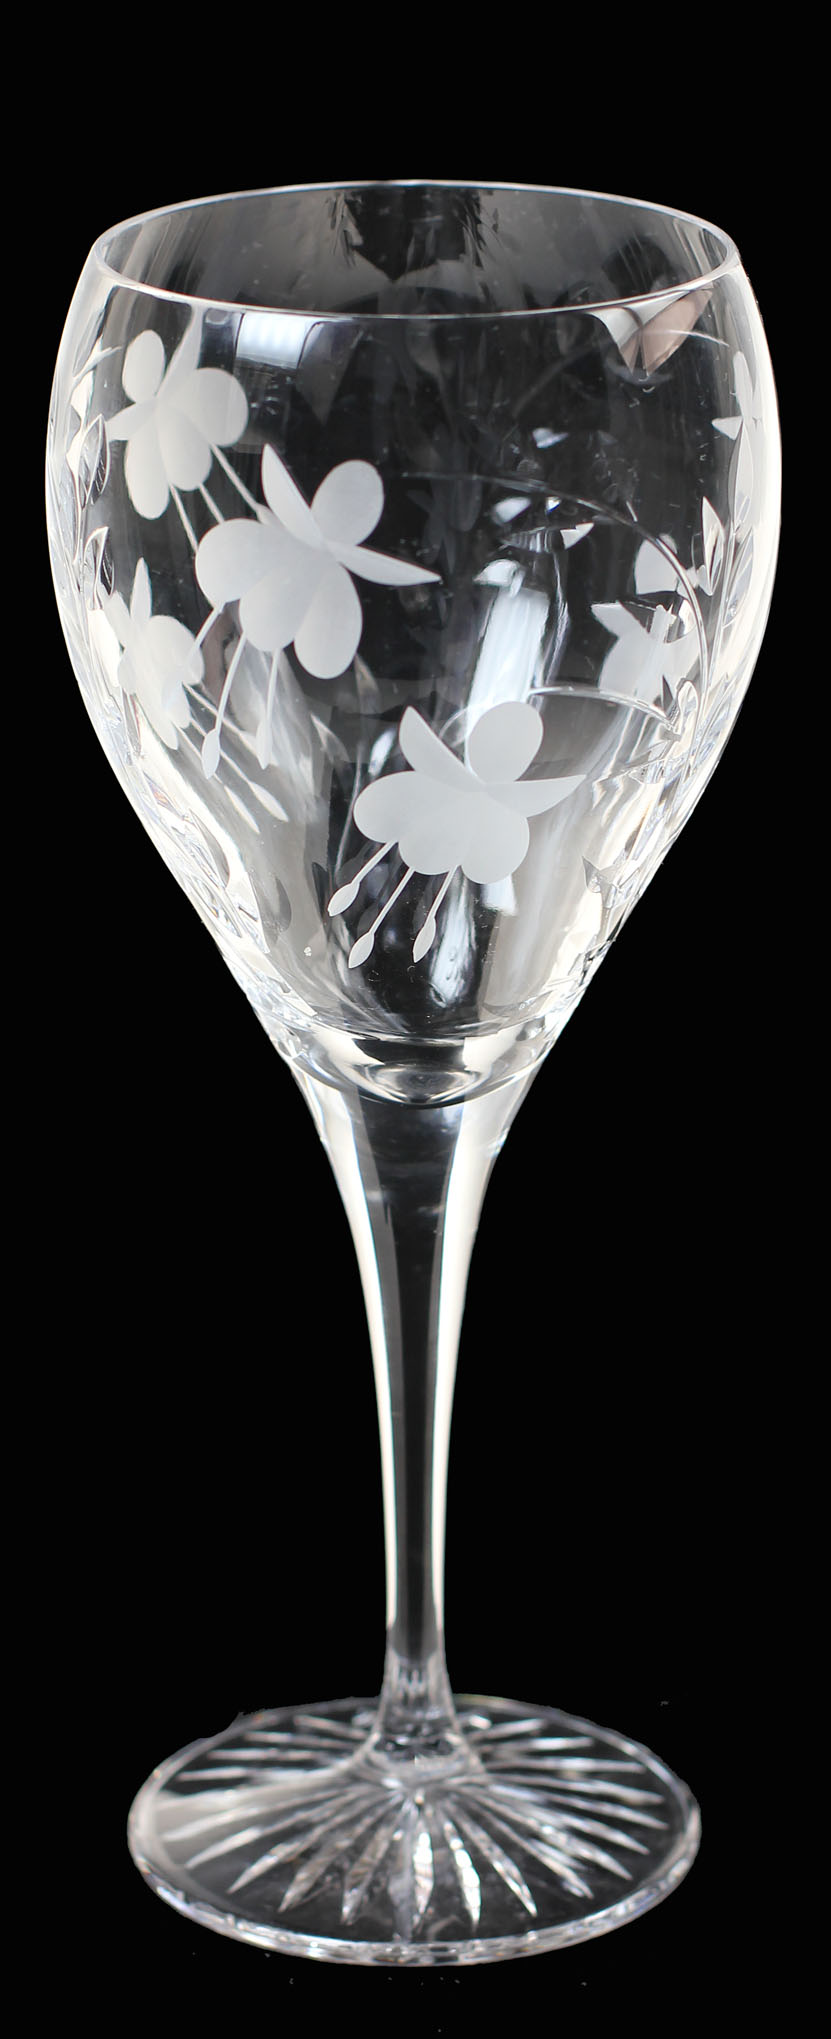 Executive Cascade Goblet / Gin Glass